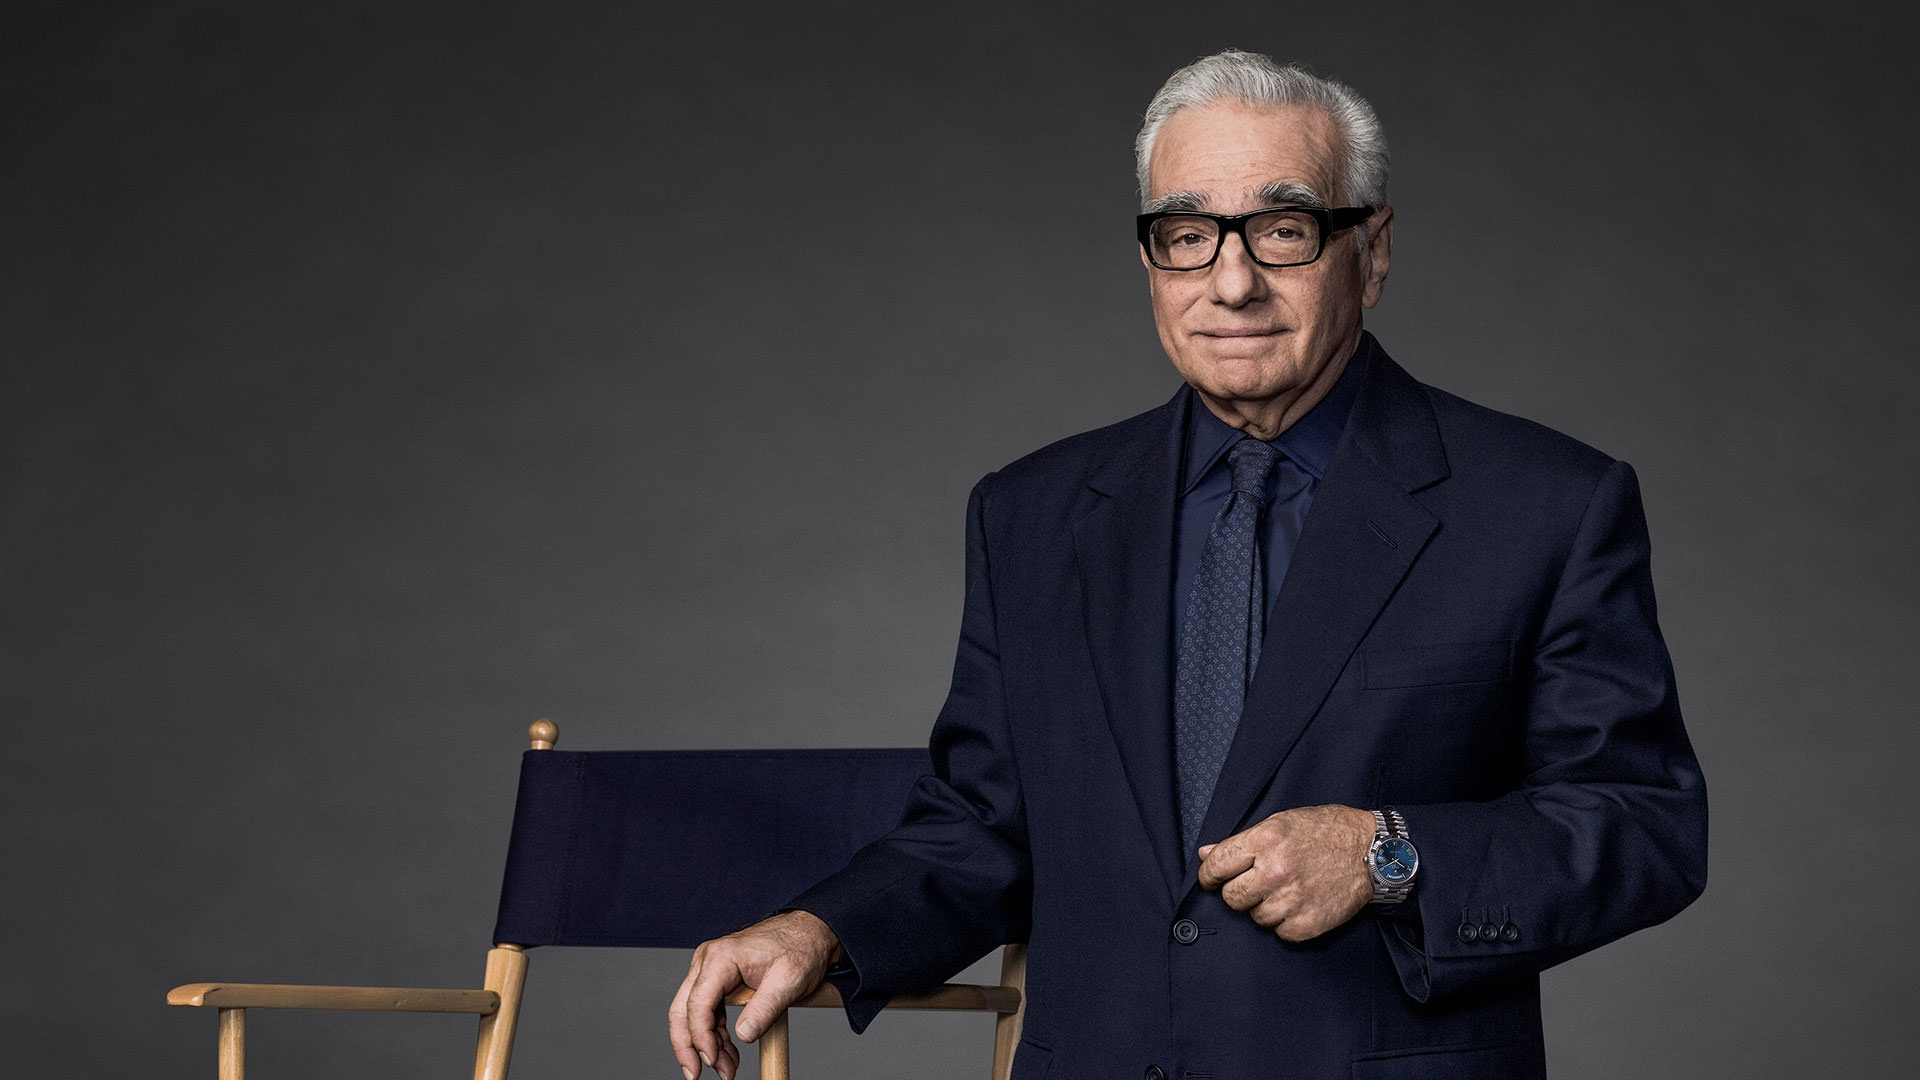 Sandalyenin yanında resmi bir takım elbise giymiş Martin Scorsese